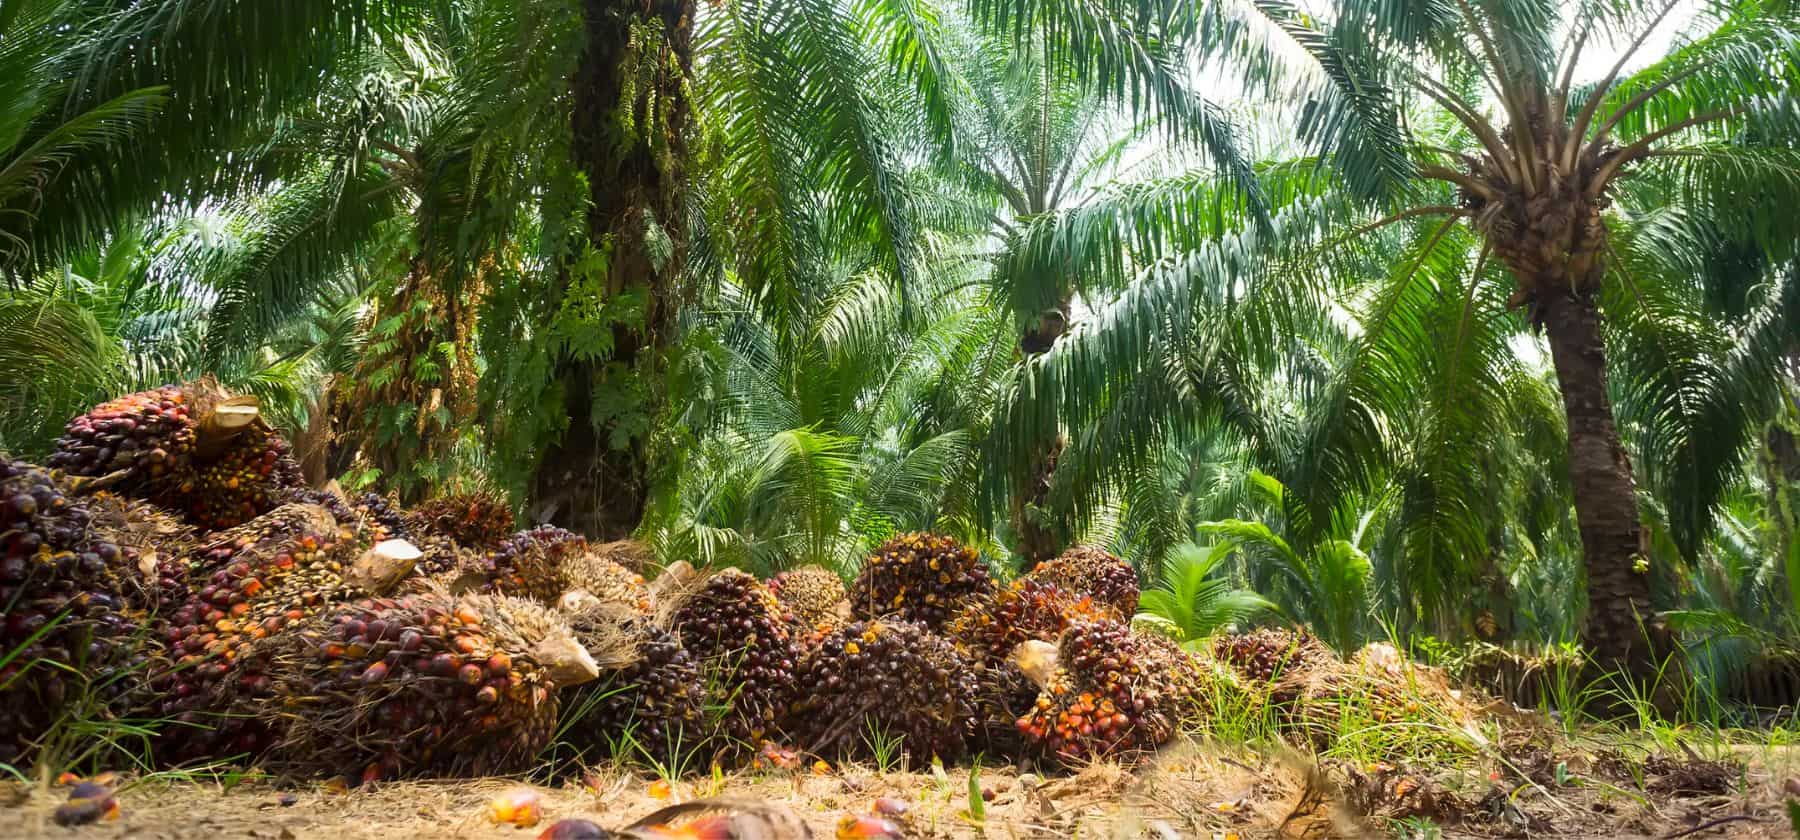 palm oil prices mpob report